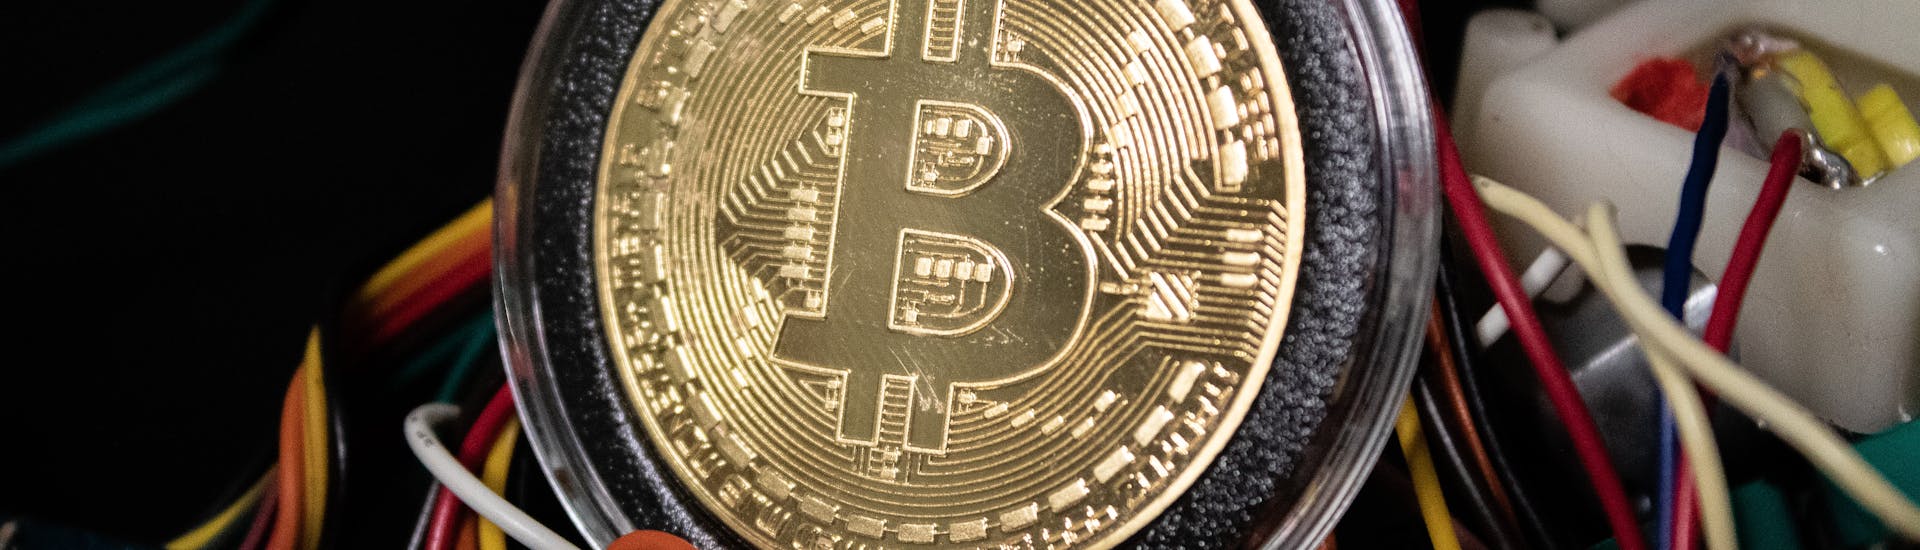 program de investiții în minerit bitcoin)